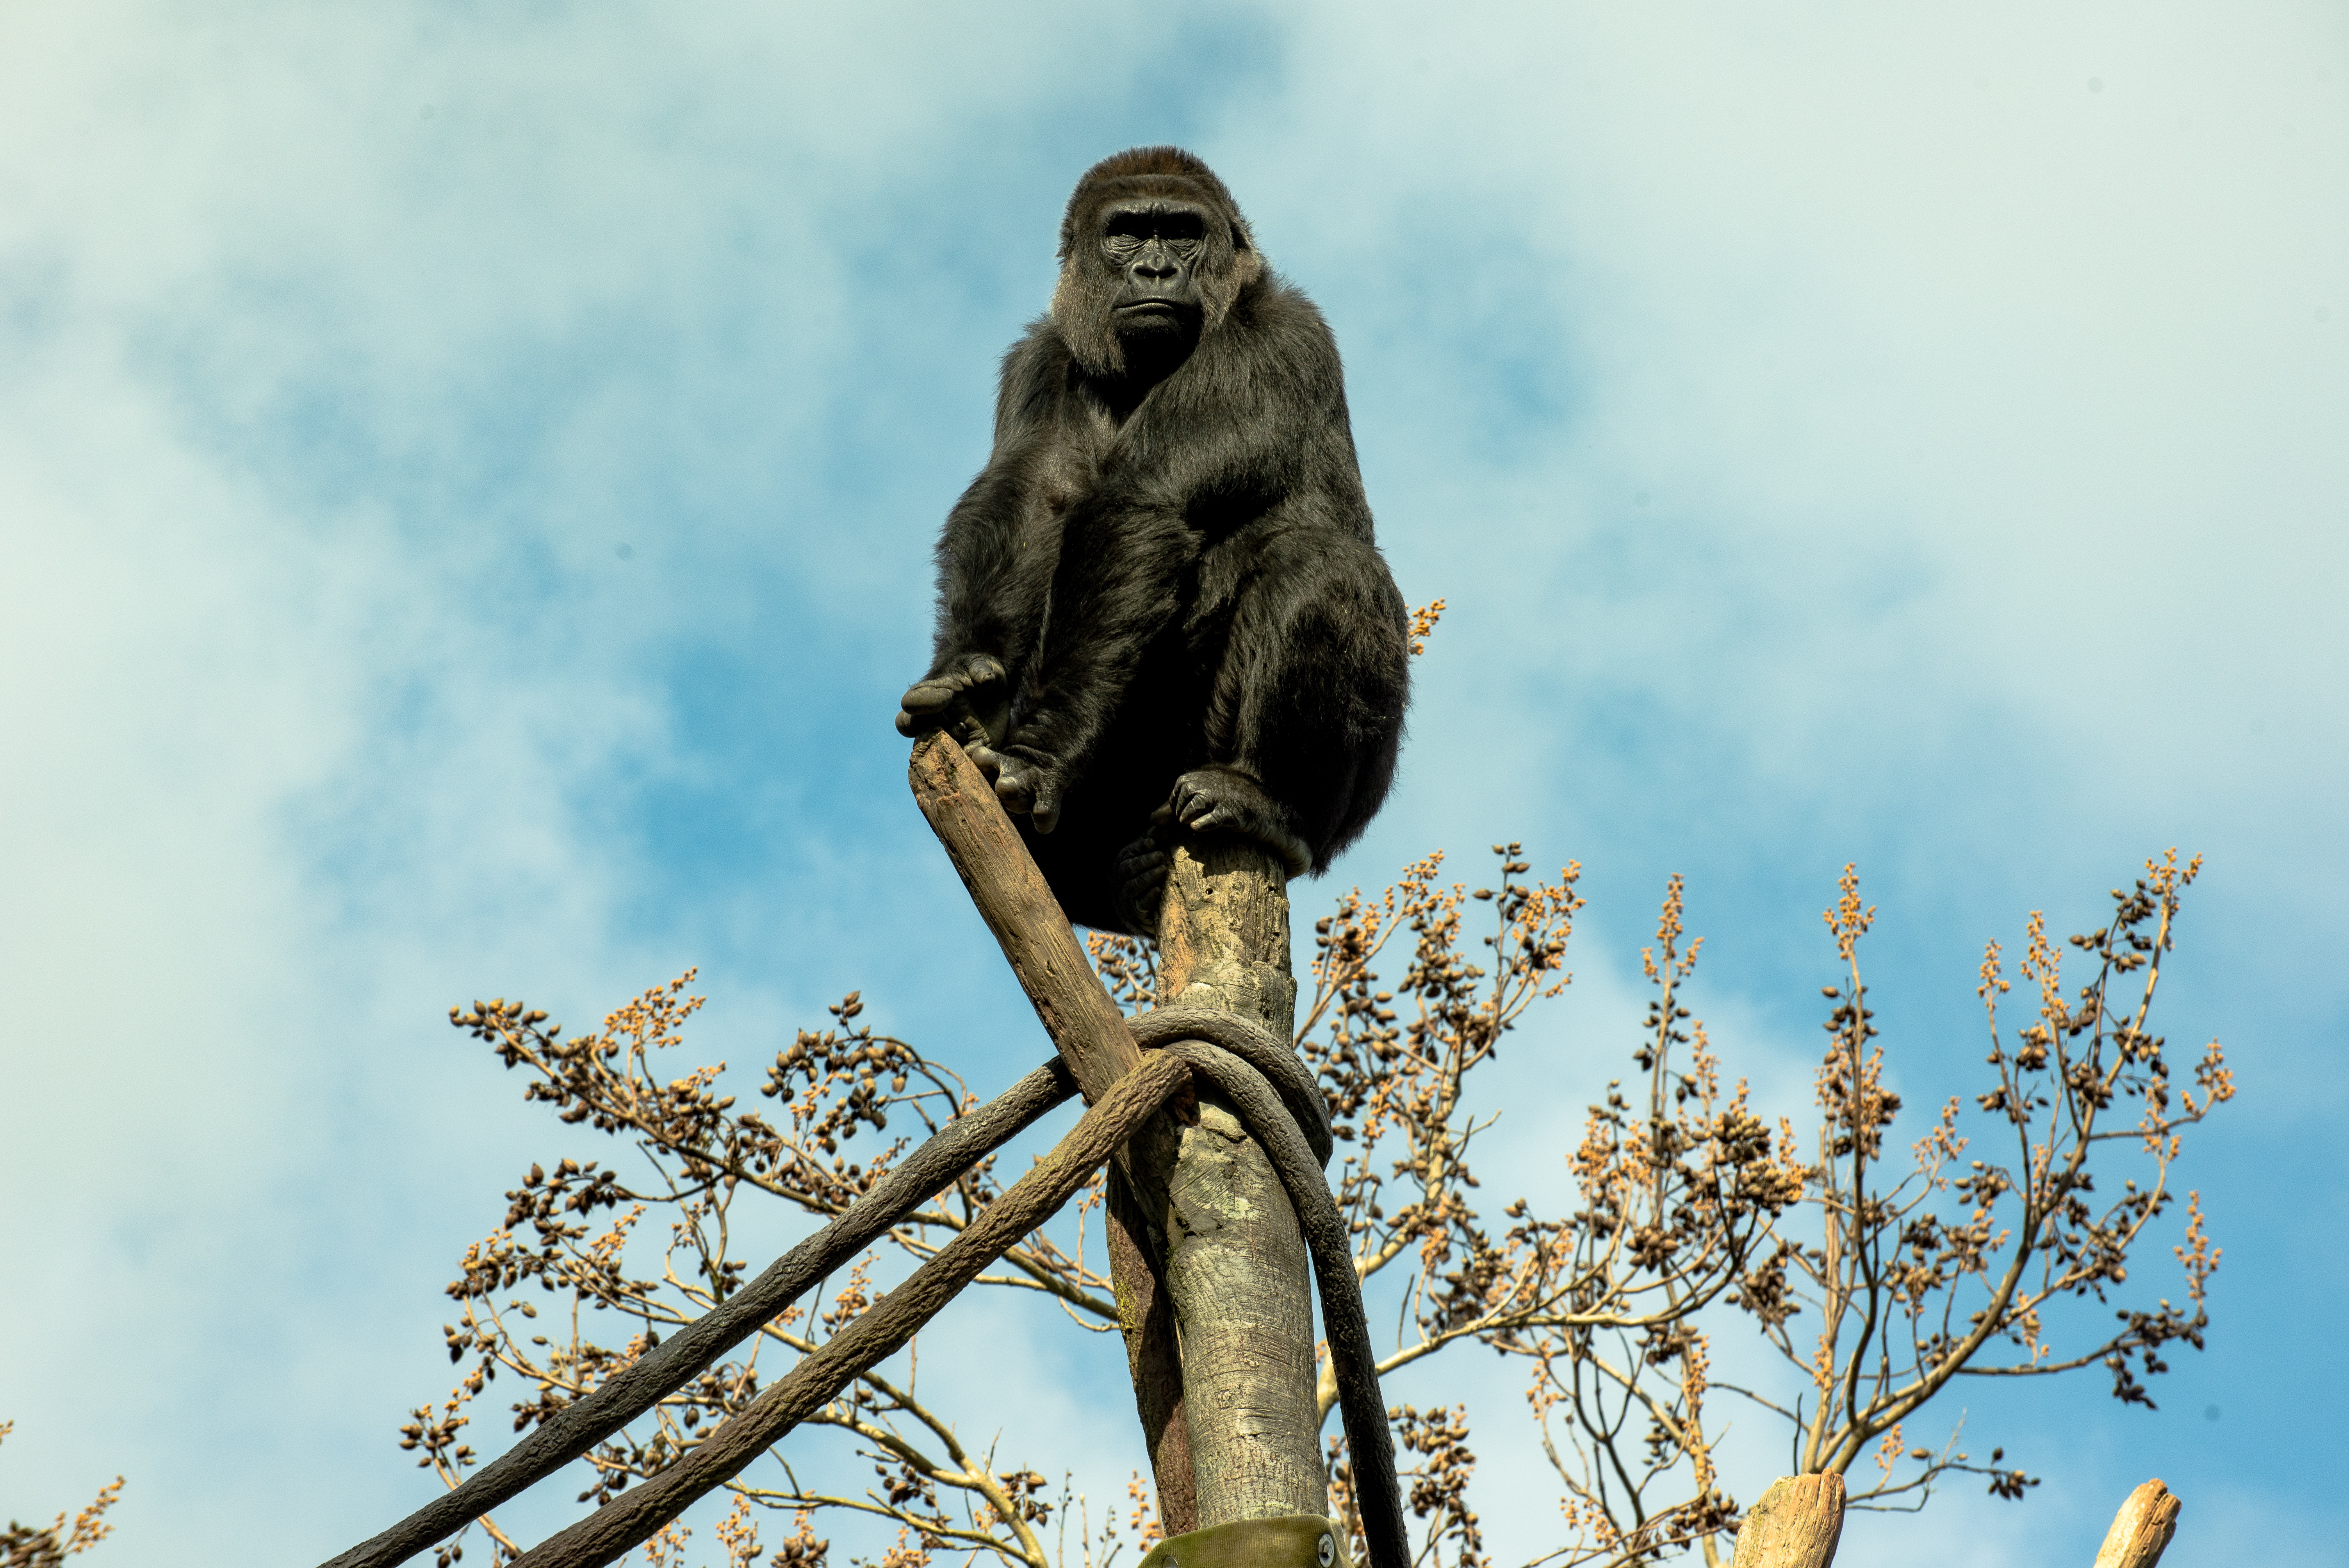 Ape Gorilla Primate Zoo 6016x4016